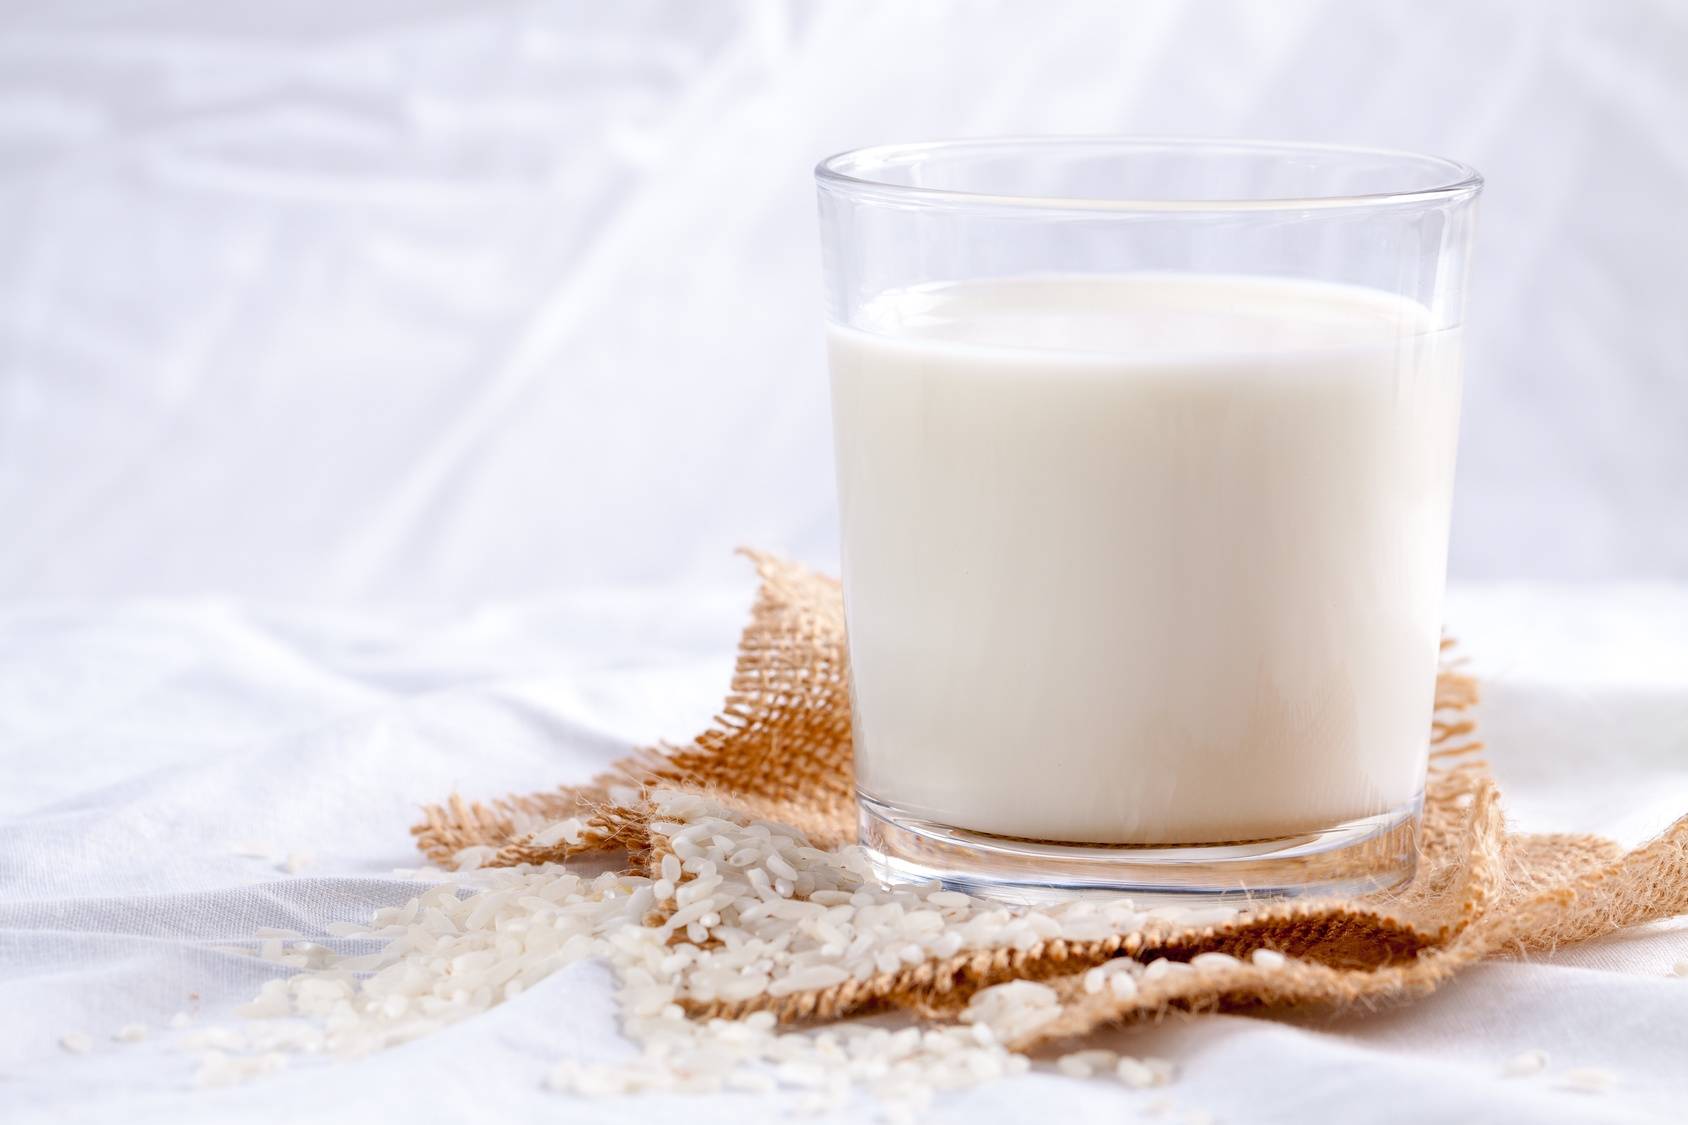 Mleko ryżowe - mleko roślinne dla wegan i osób z nietolerancją laktozy.